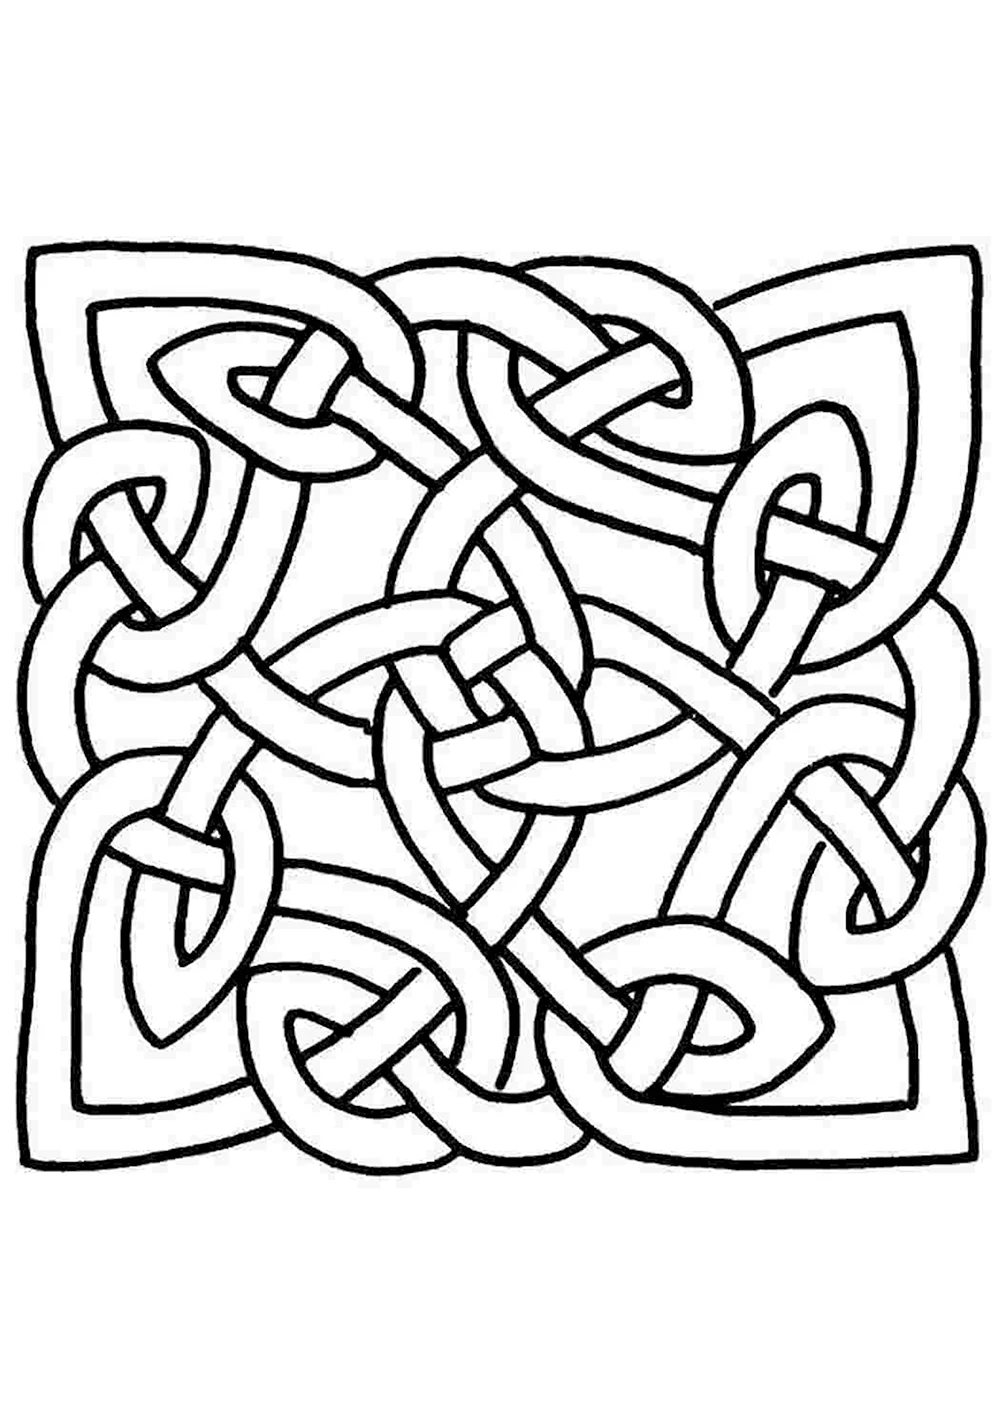 Кельтский орнамент в прямоугольнике